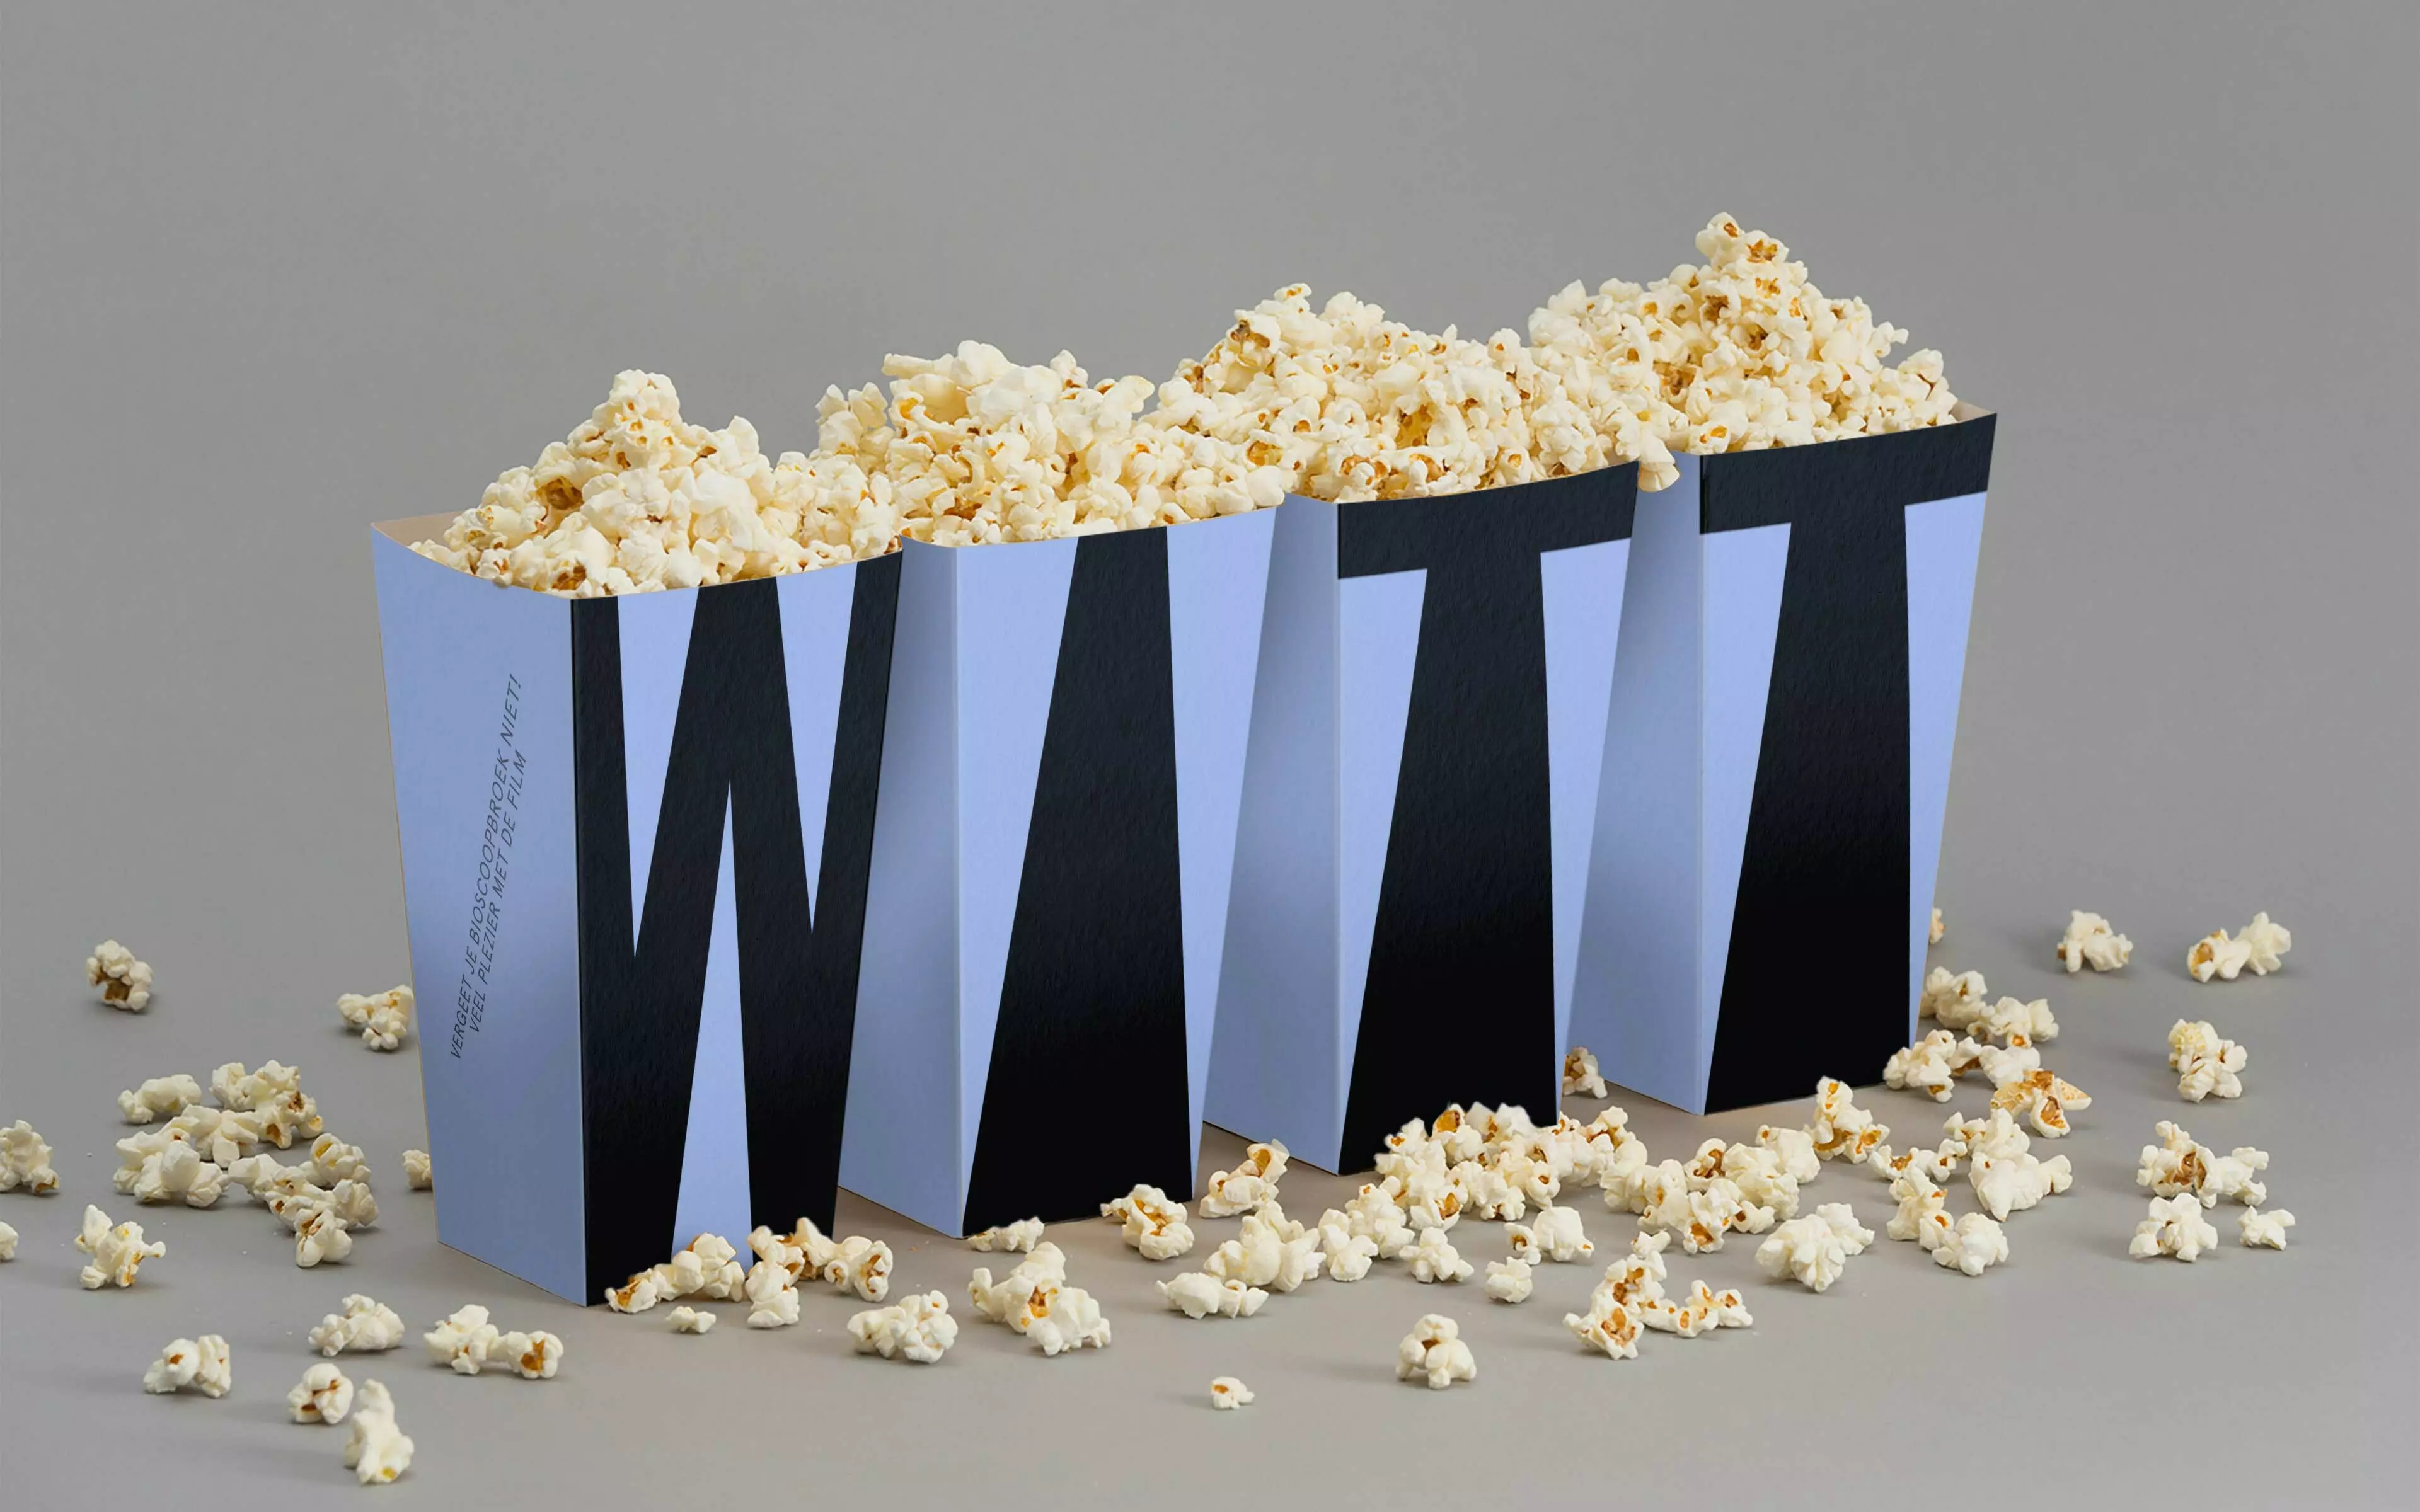 De Witt Popcorn